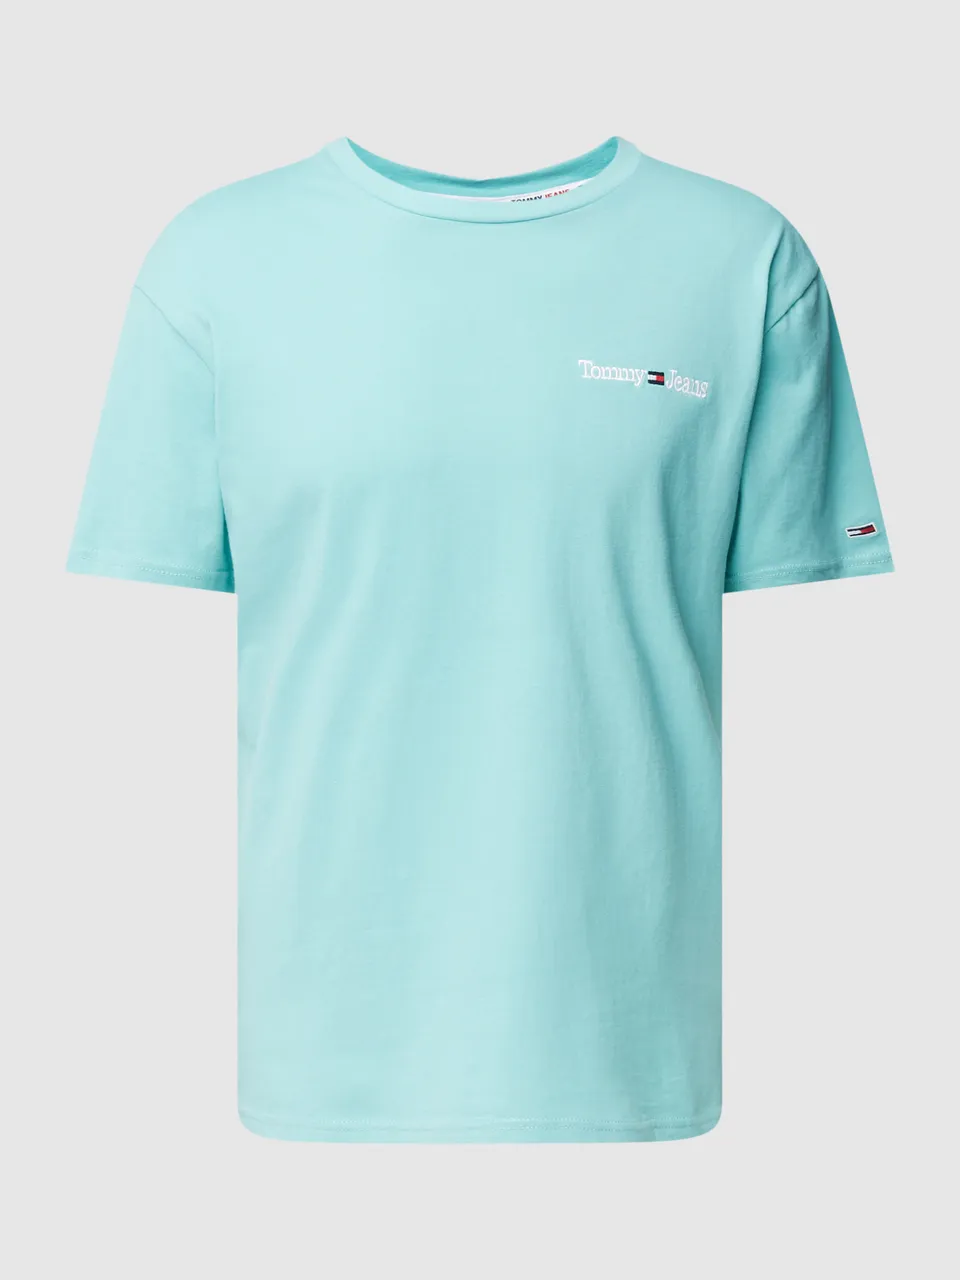 Tommy Hilfiger T-Shirt mit Label-Stitching Modell 'LINEAR' DM0DM15790 -  Preise vergleichen